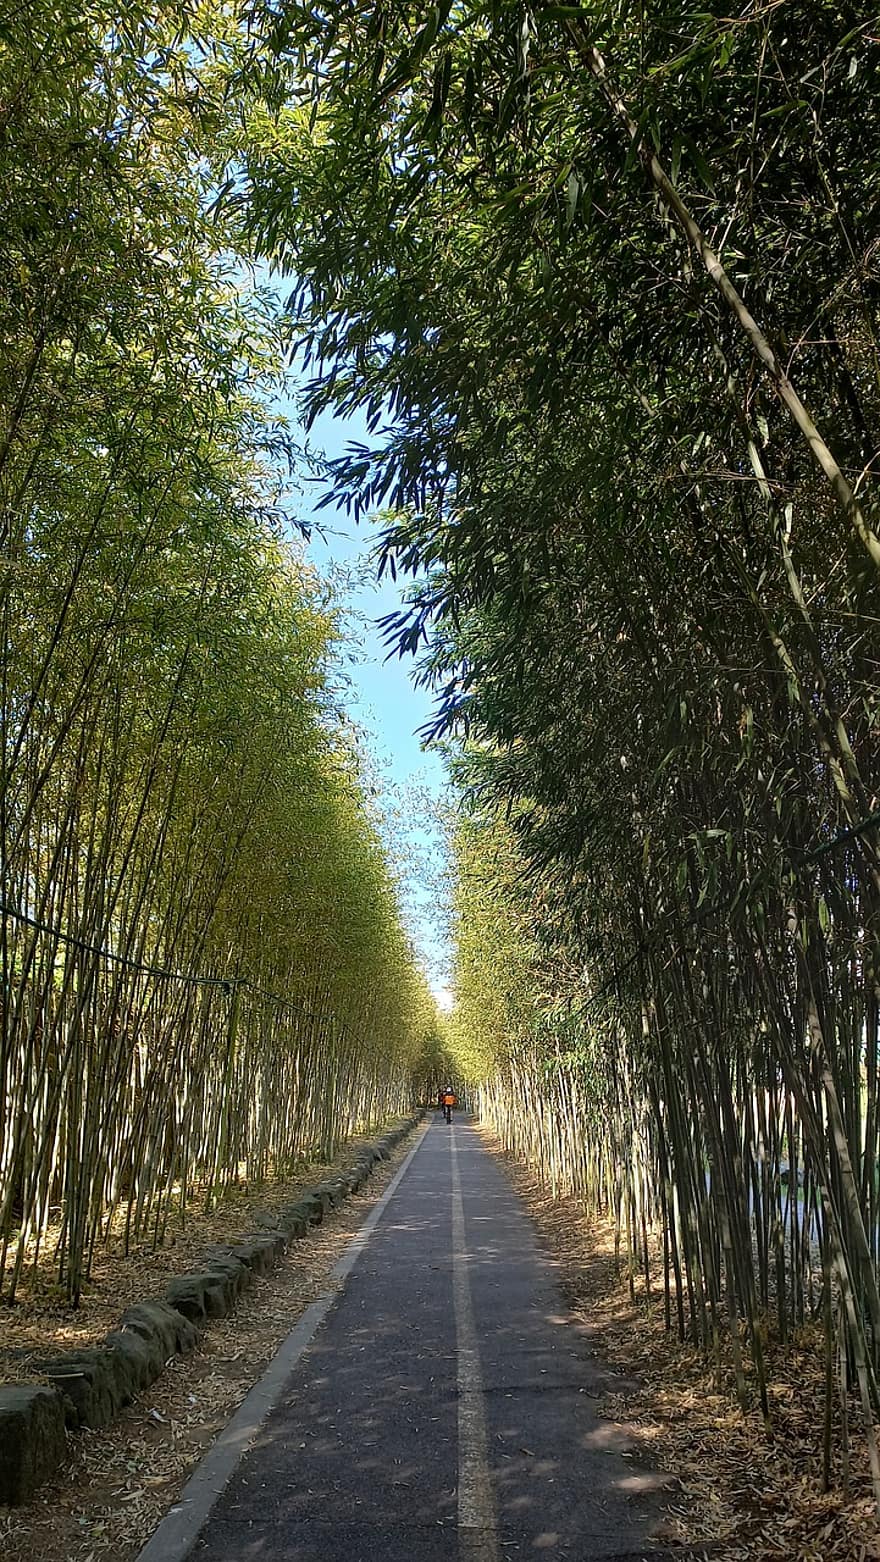 bambú, la carretera, parque, plantas, callejón, paisaje, árbol, escena rural, bosque, verano, agricultura